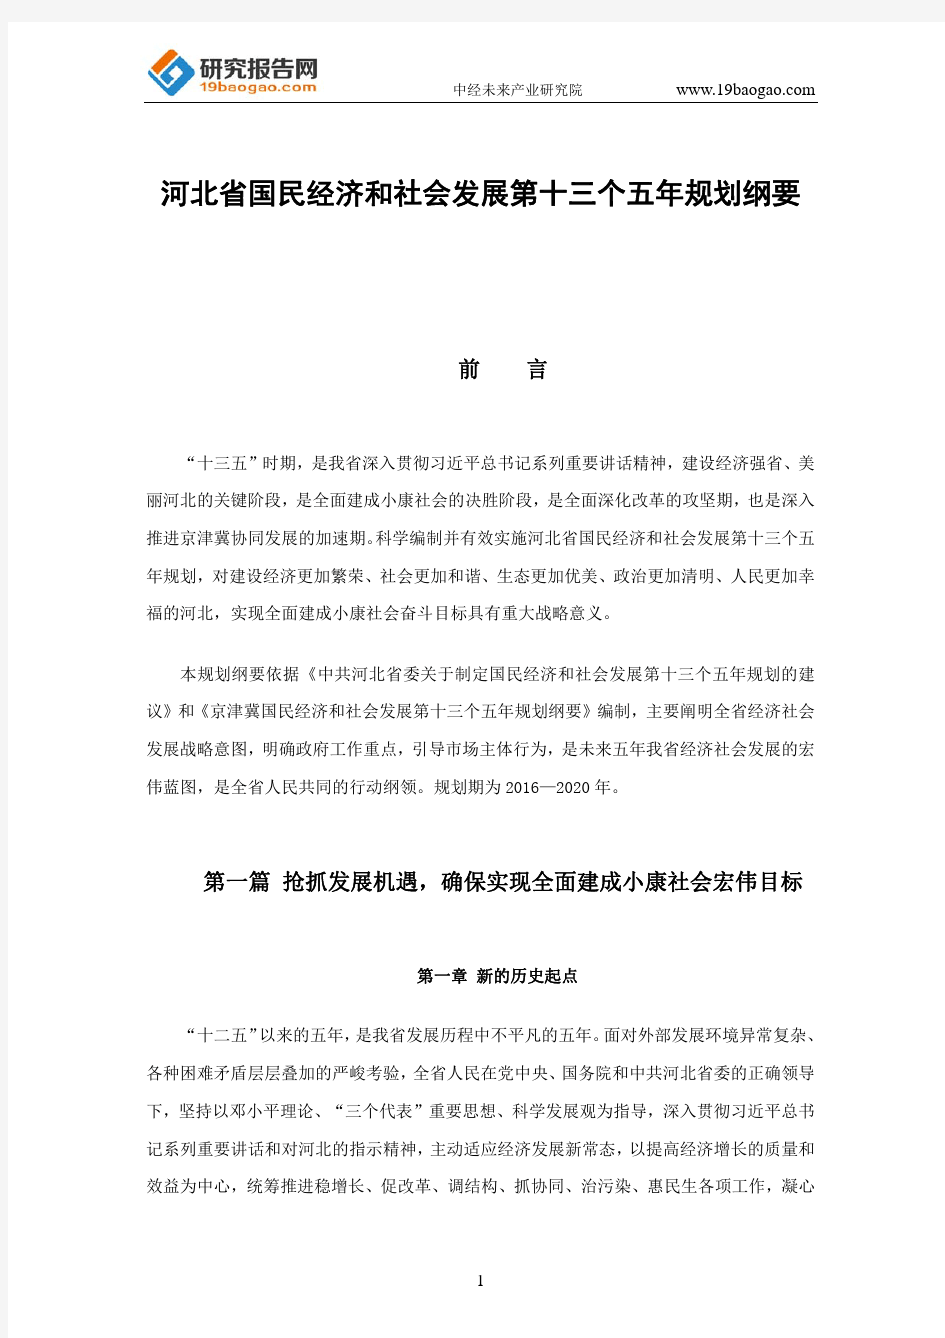 河北省国民经济和社会发展第十三个五年规划纲要